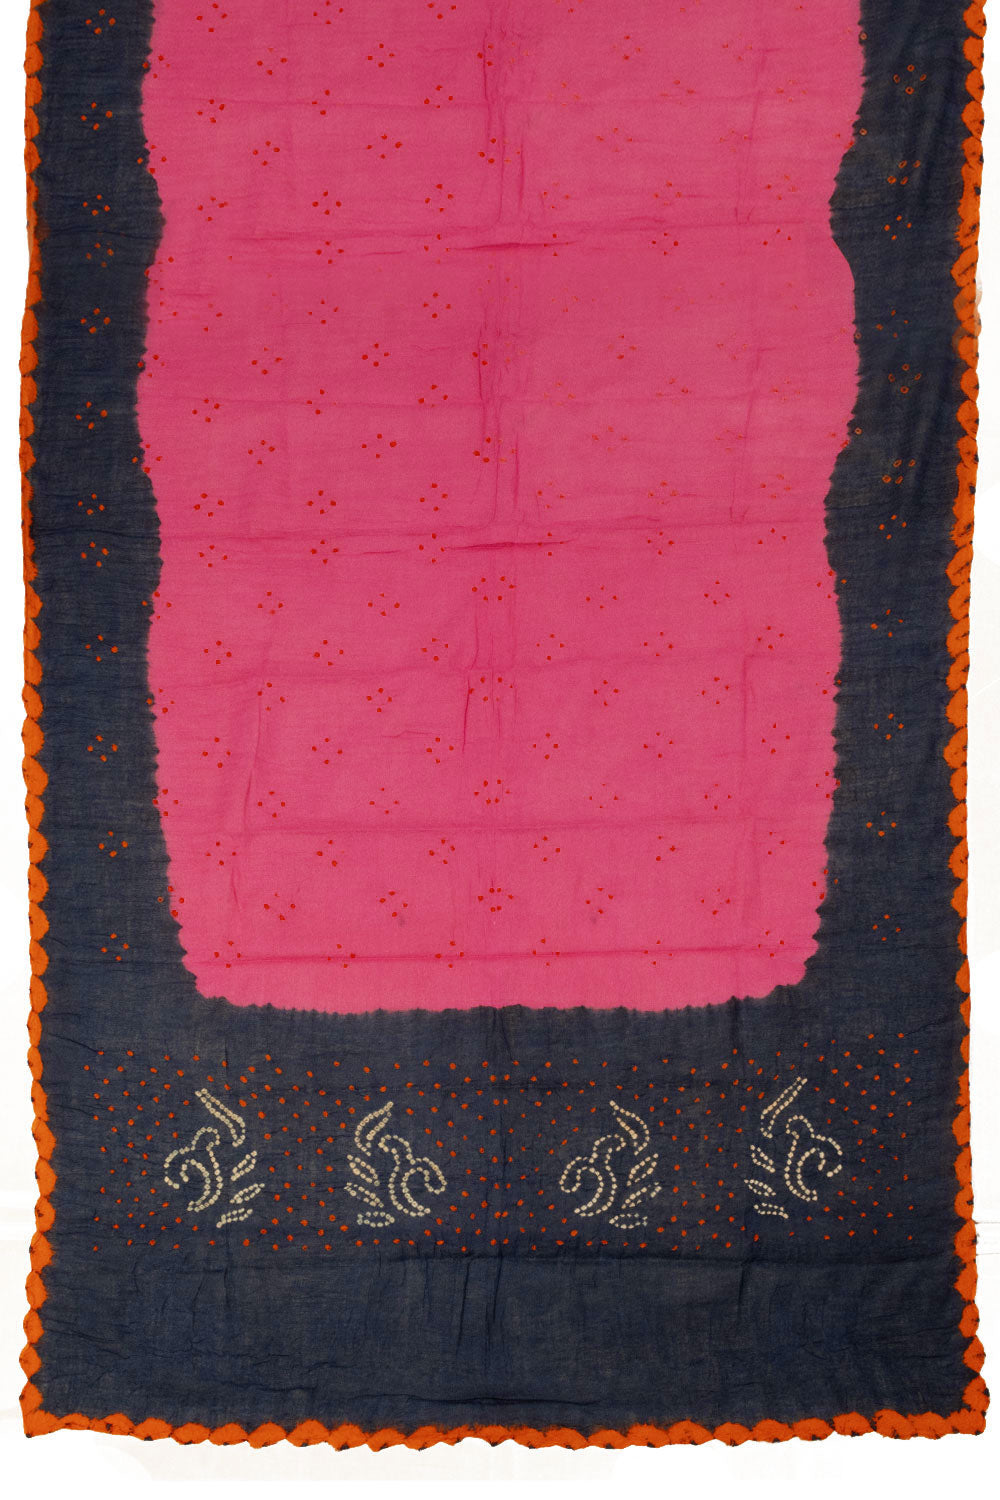 Black with Pink Bandhani Cotton 3-Piece Salwar Suit Material - Avishya